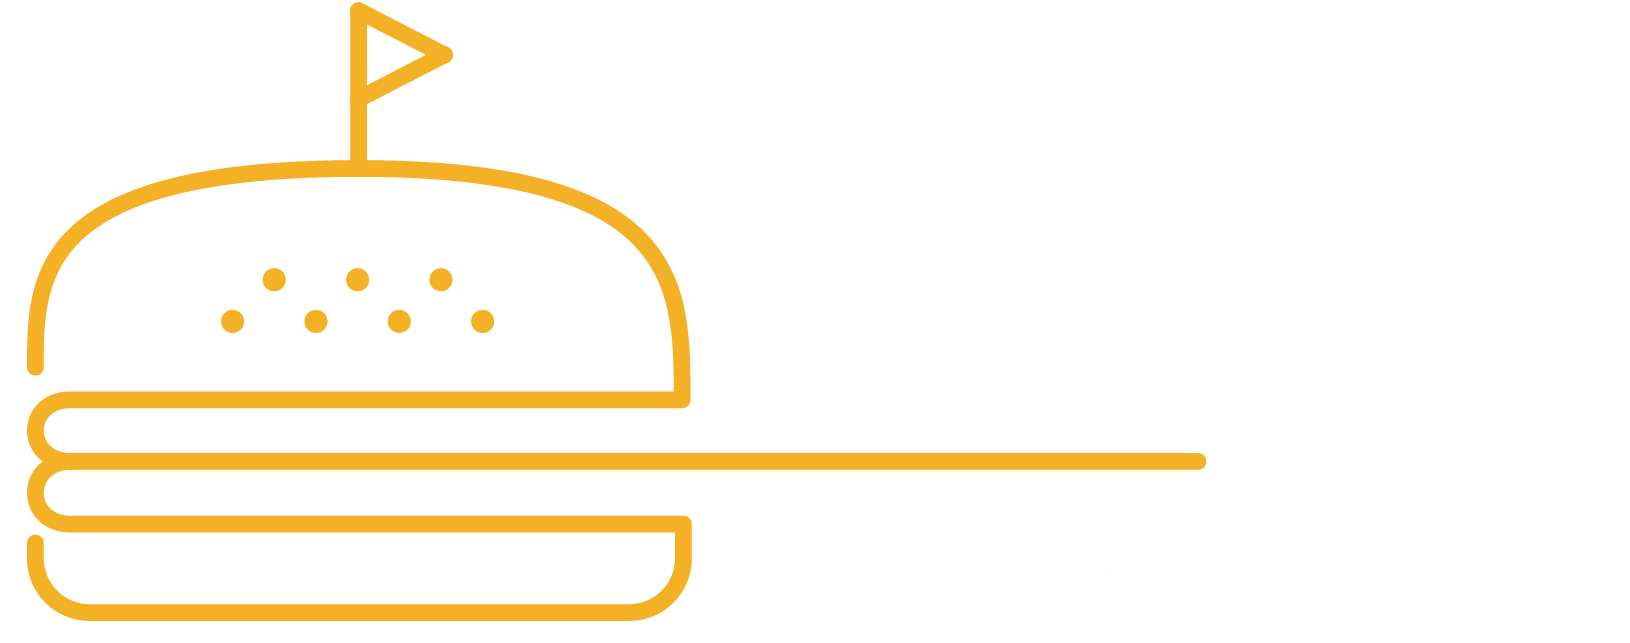 Maturin Burger